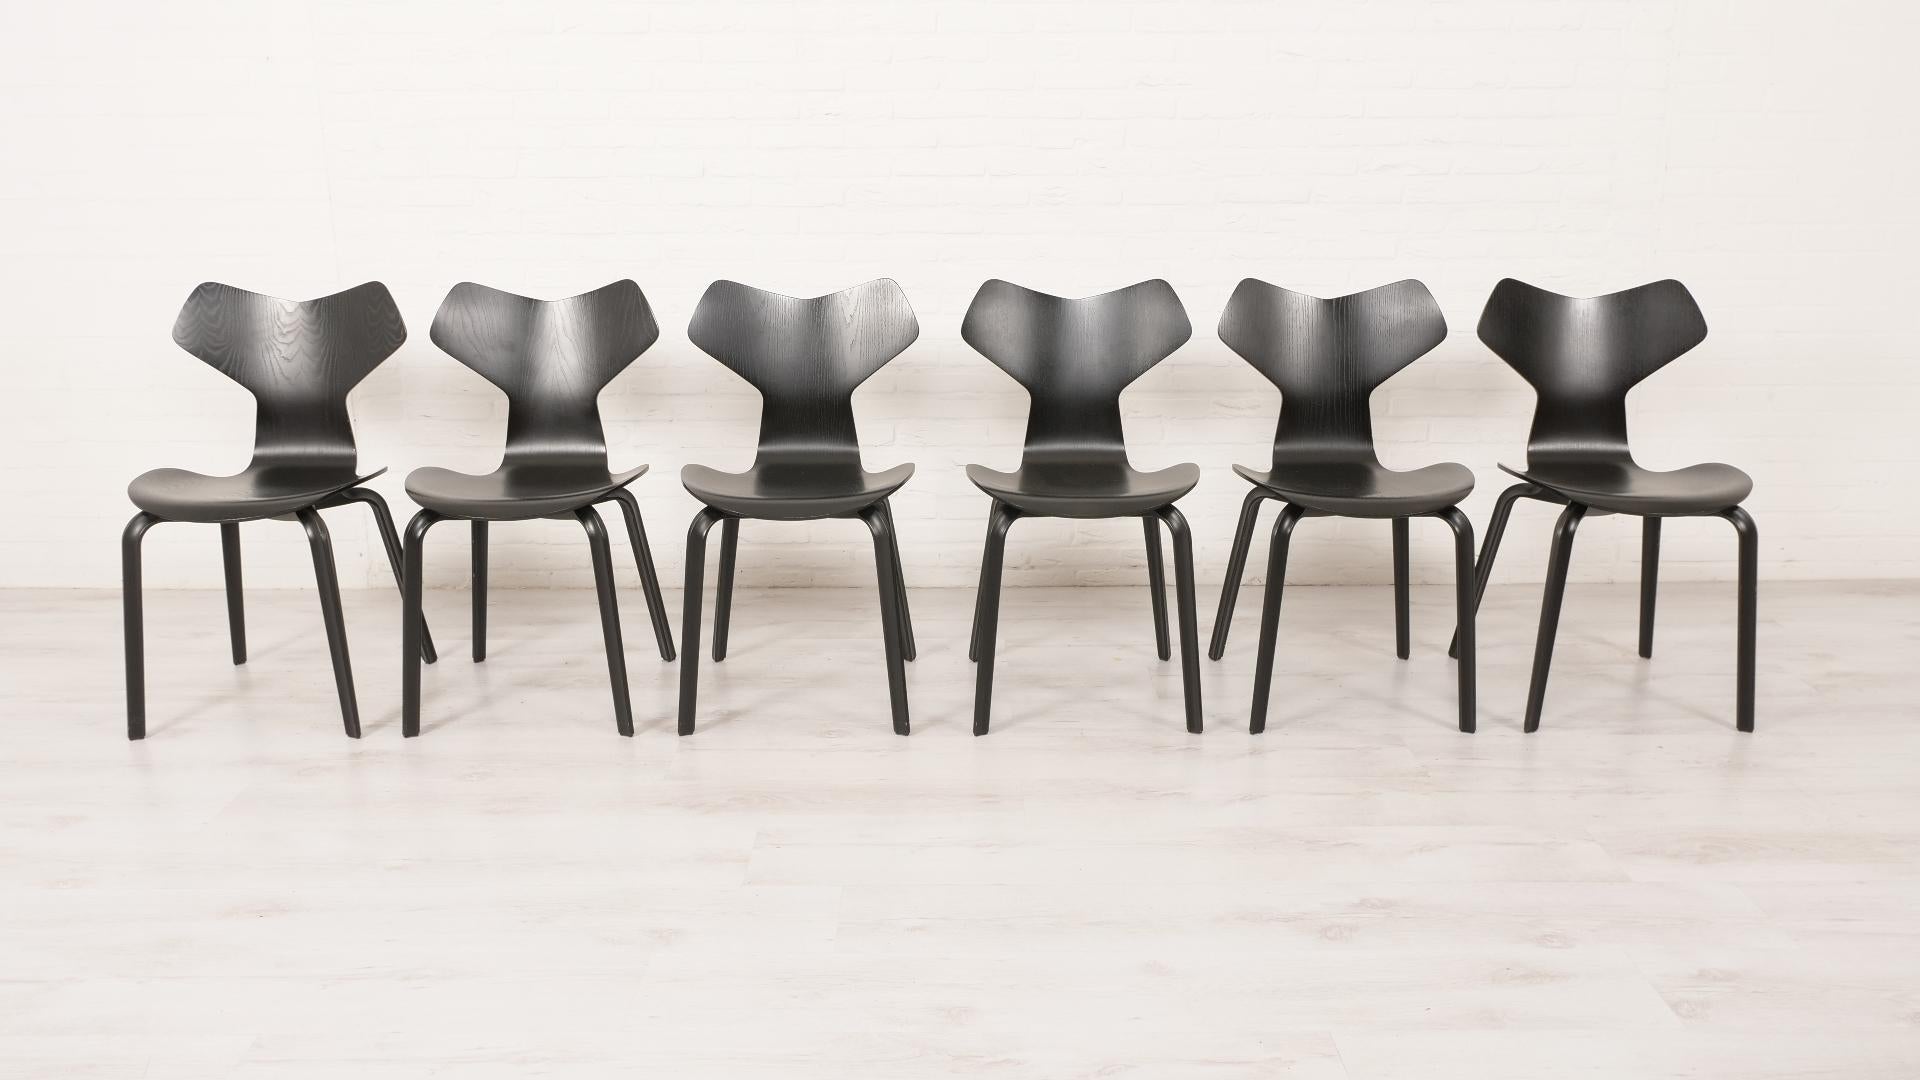 Diese schönen Esszimmerstühle wurden 1957 von Arne Jacobsen für Fritz Hansen entworfen. Dieser Entwurf erhielt die Typennummer 3130. Im selben Jahr wurde dieser Entwurf auf der Triennale in Mailand mit dem Grand Prix ausgezeichnet, und der Entwurf